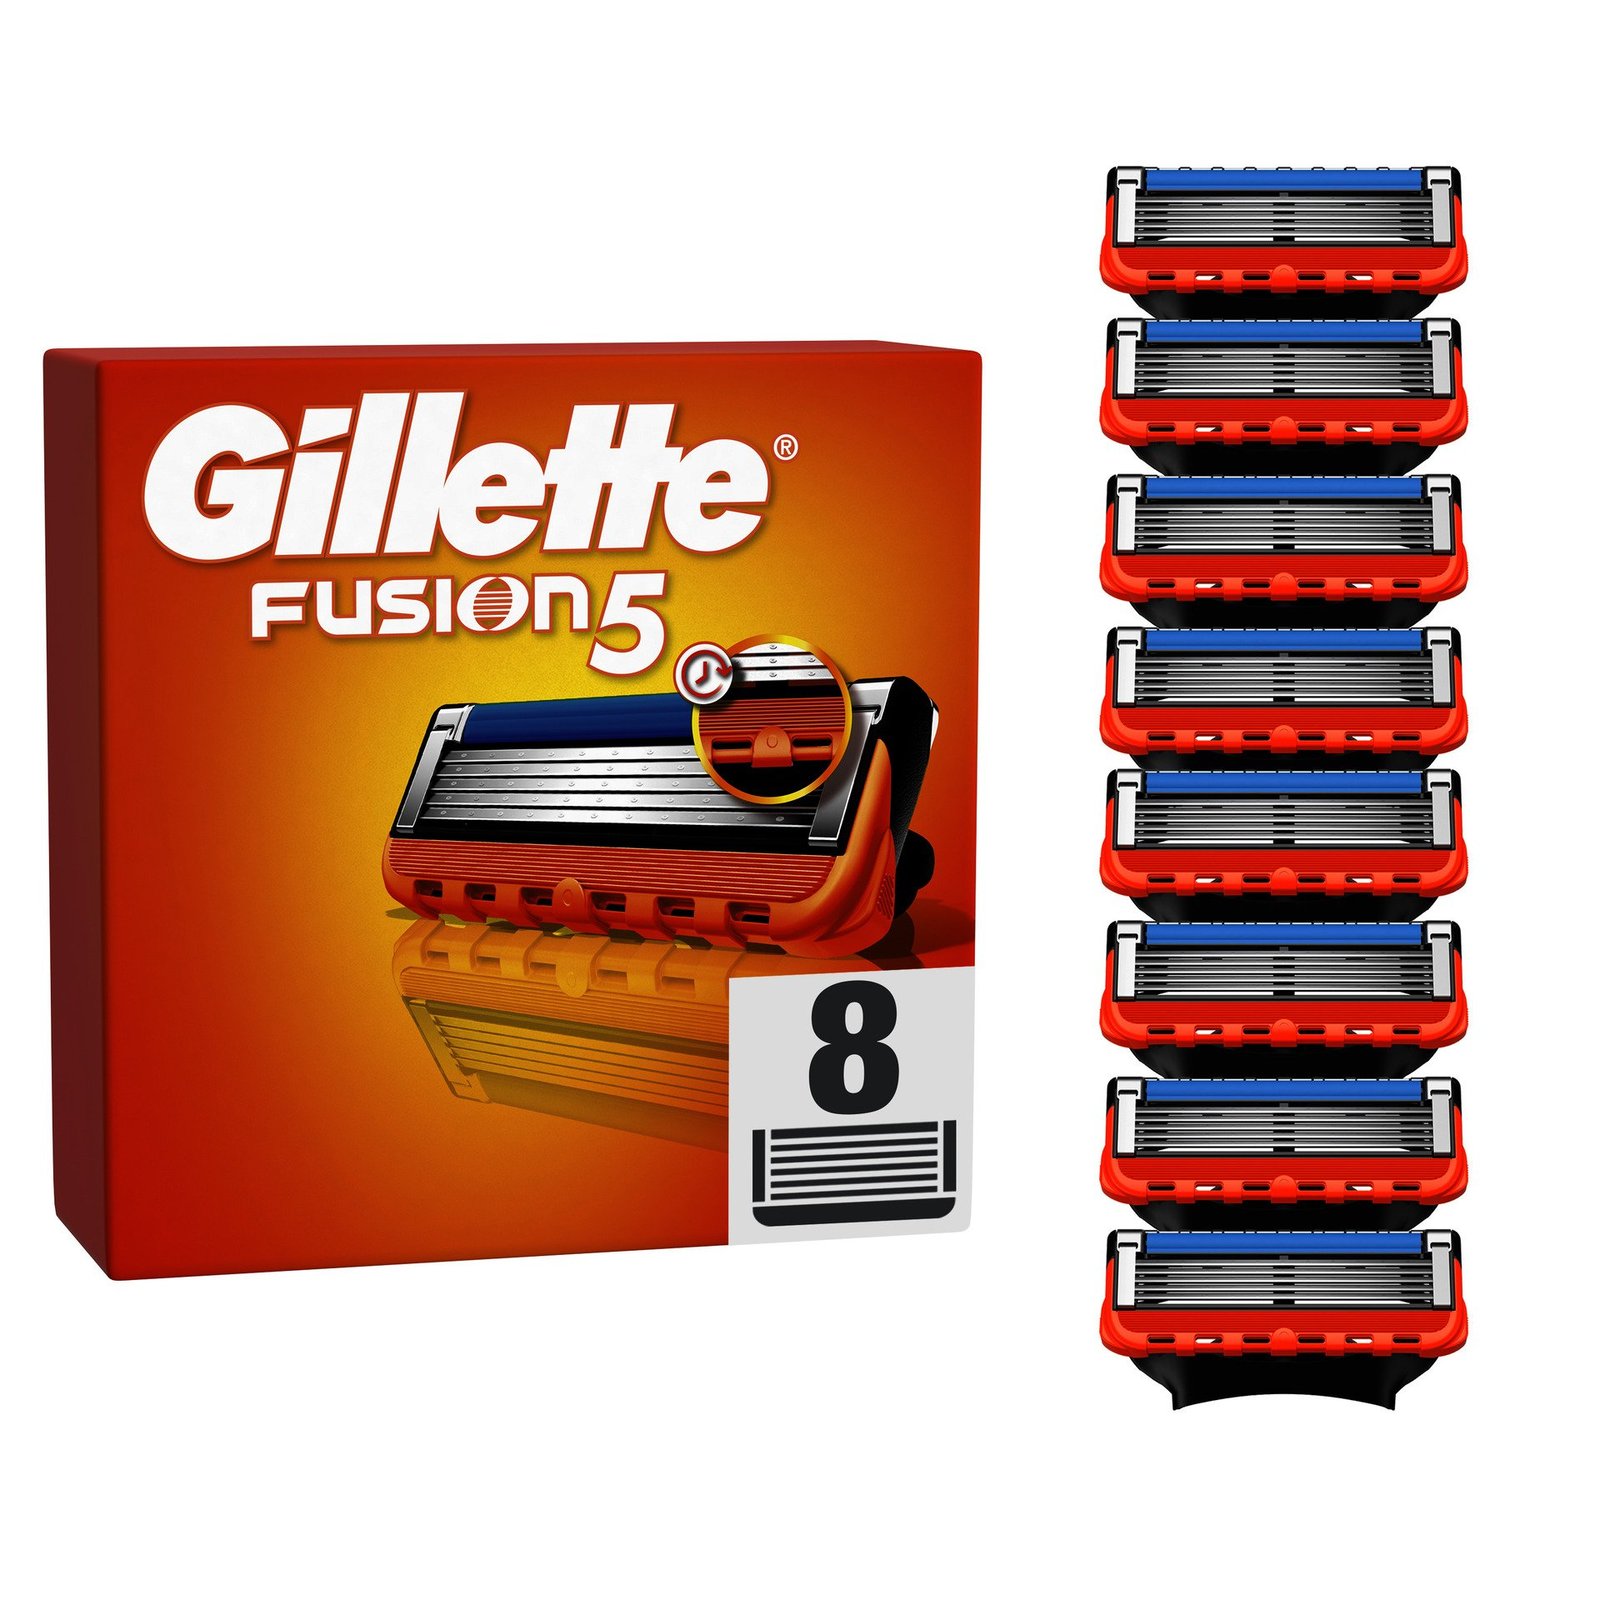 Gillette Fusion5 rakblad för män, 8 st